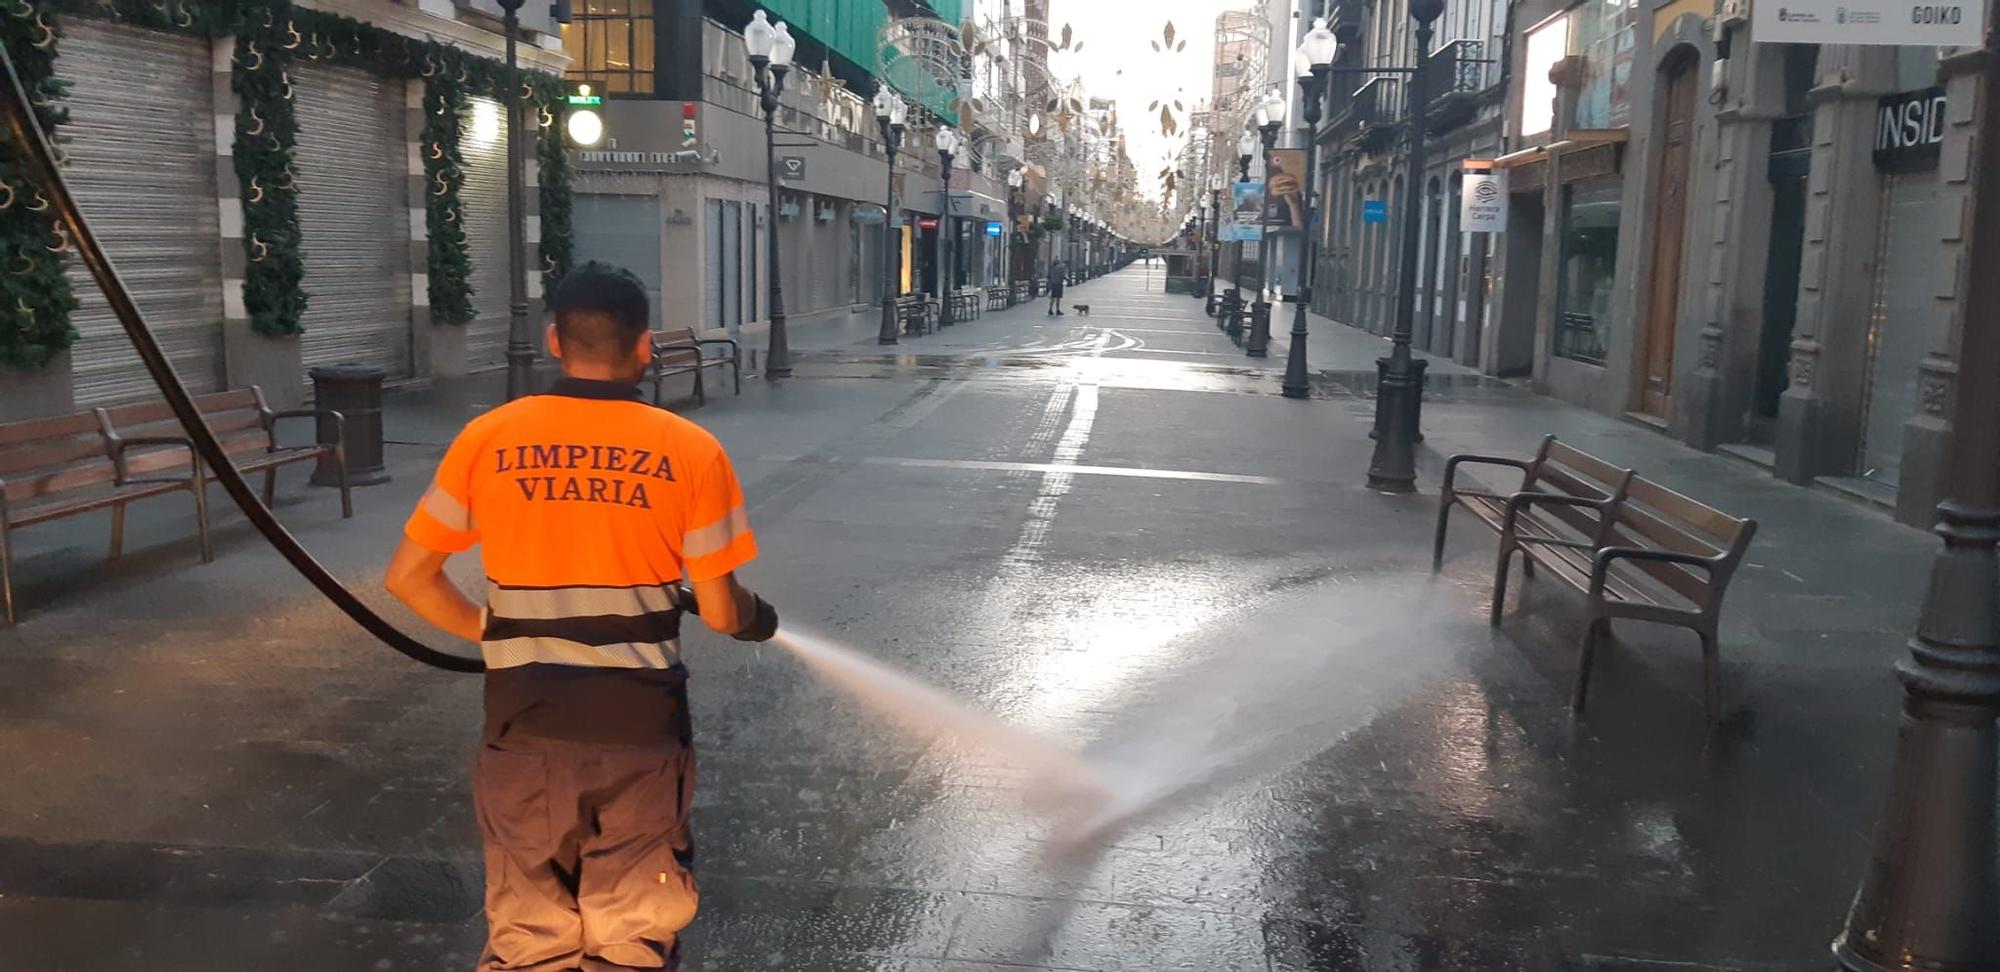 Limpieza en Las Palmas de Gran Canaria tras la Nochebuena